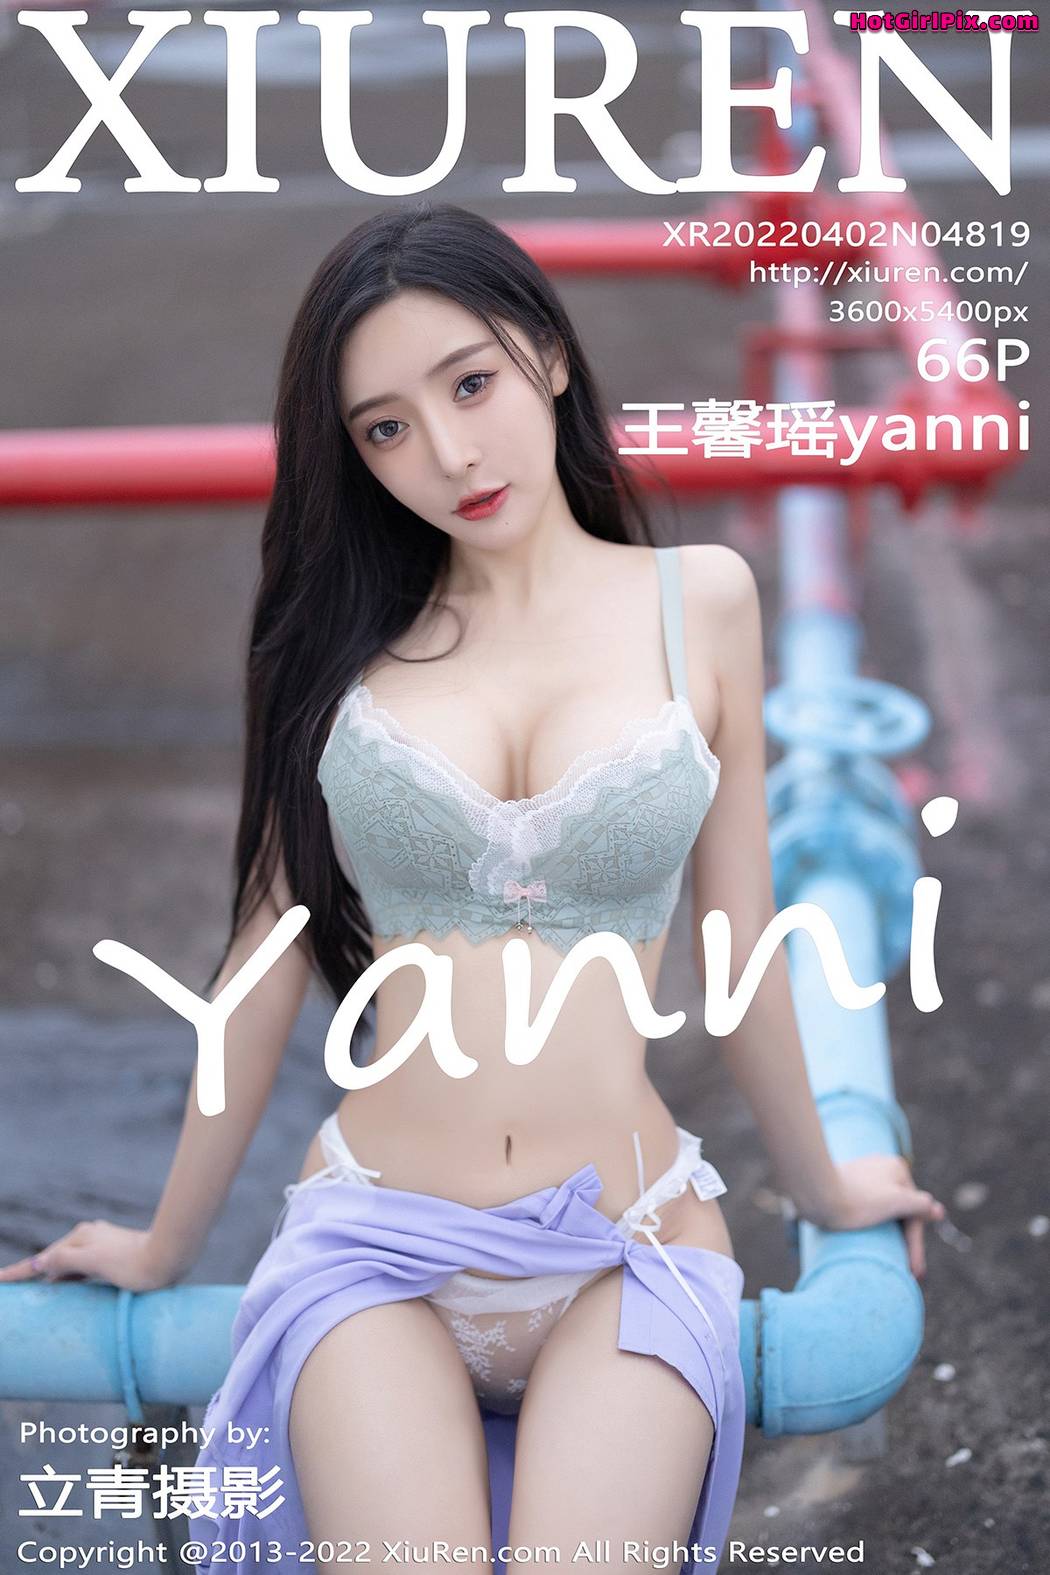 [XIUREN] No.4819 Wang Xin Yao 王馨瑶yanni Cover Photo